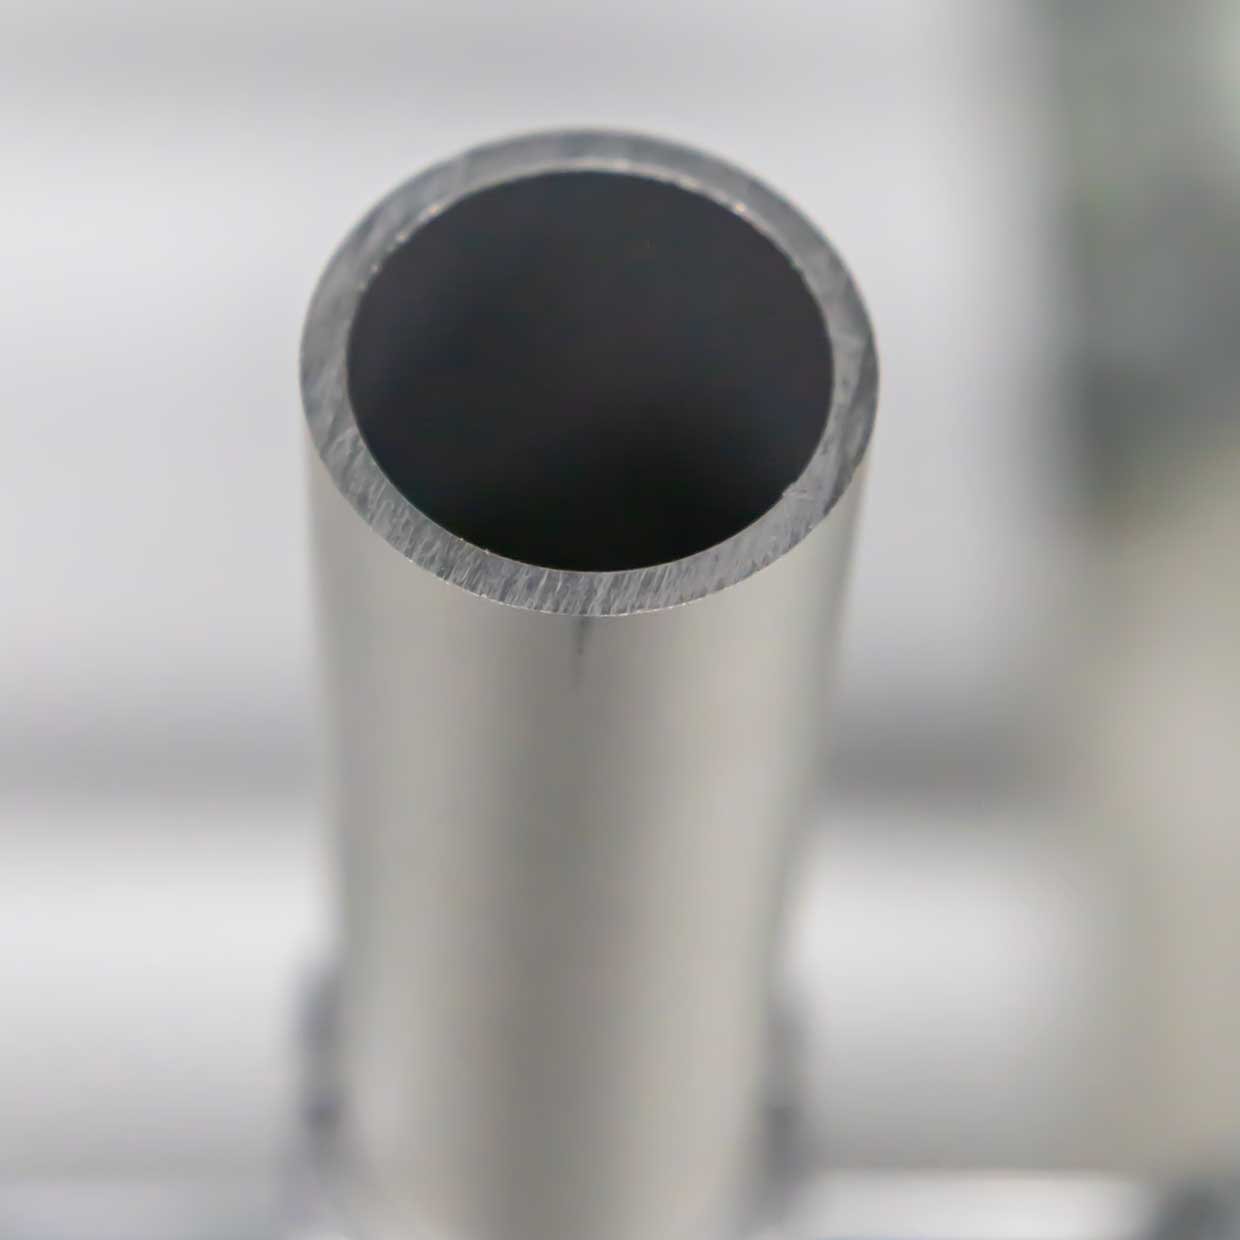 Țeavă rotundă din aluminiu cu diametrul de 28 mm